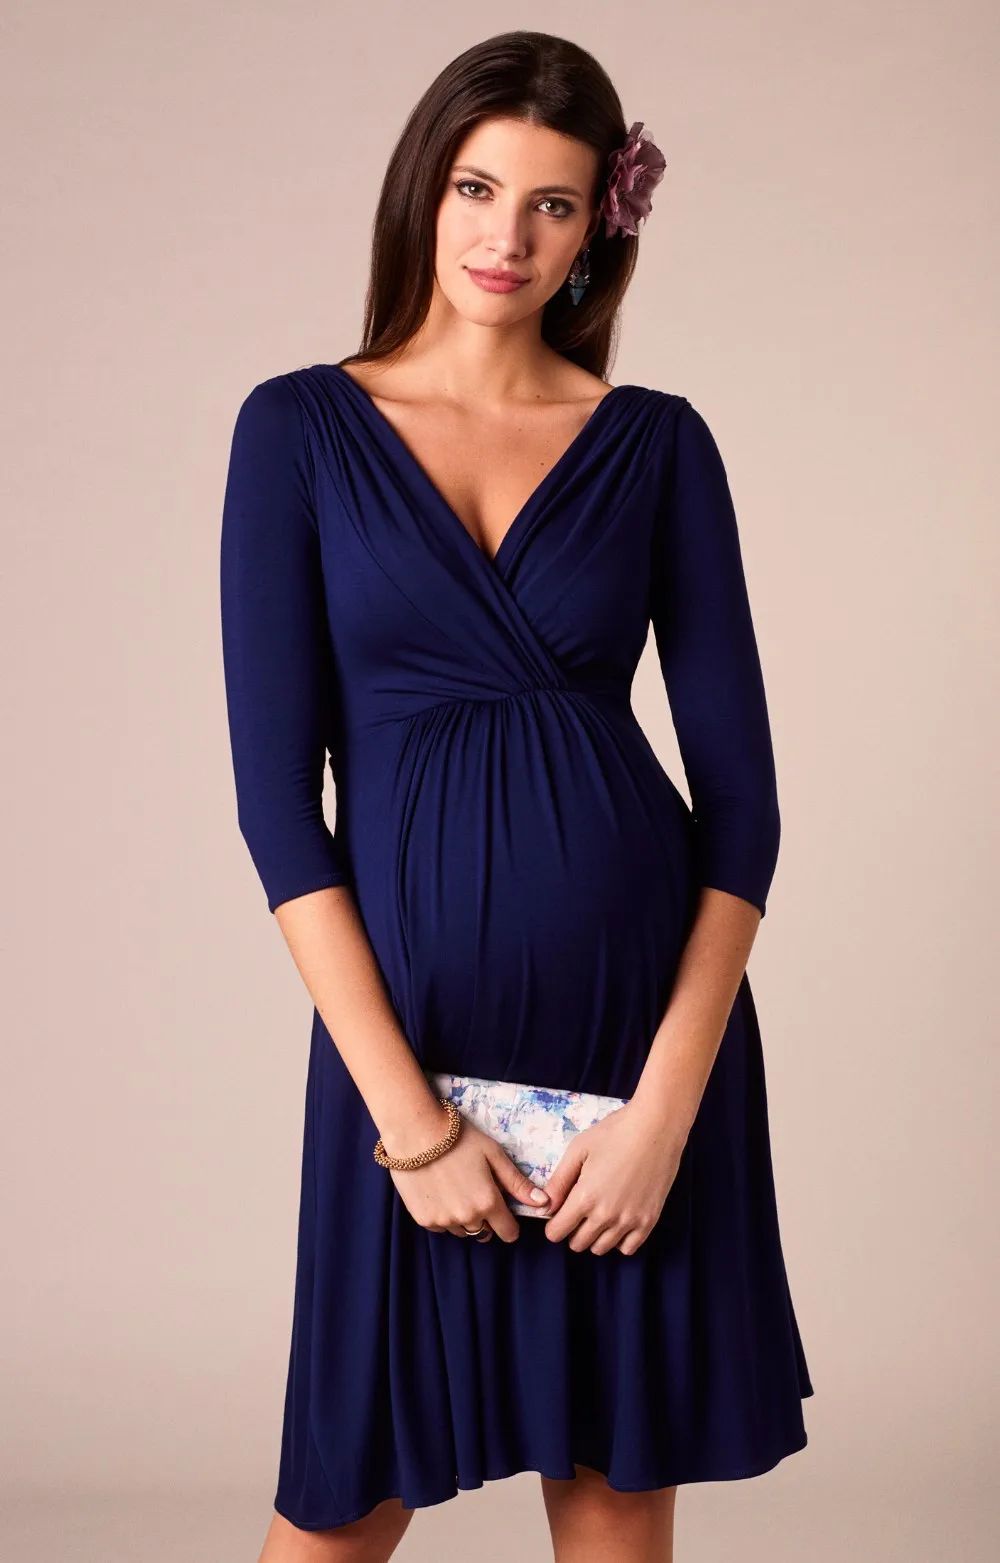 2020 Fashion Cotton Pregnancy Women Striped Nursing Dress Long Summer ...